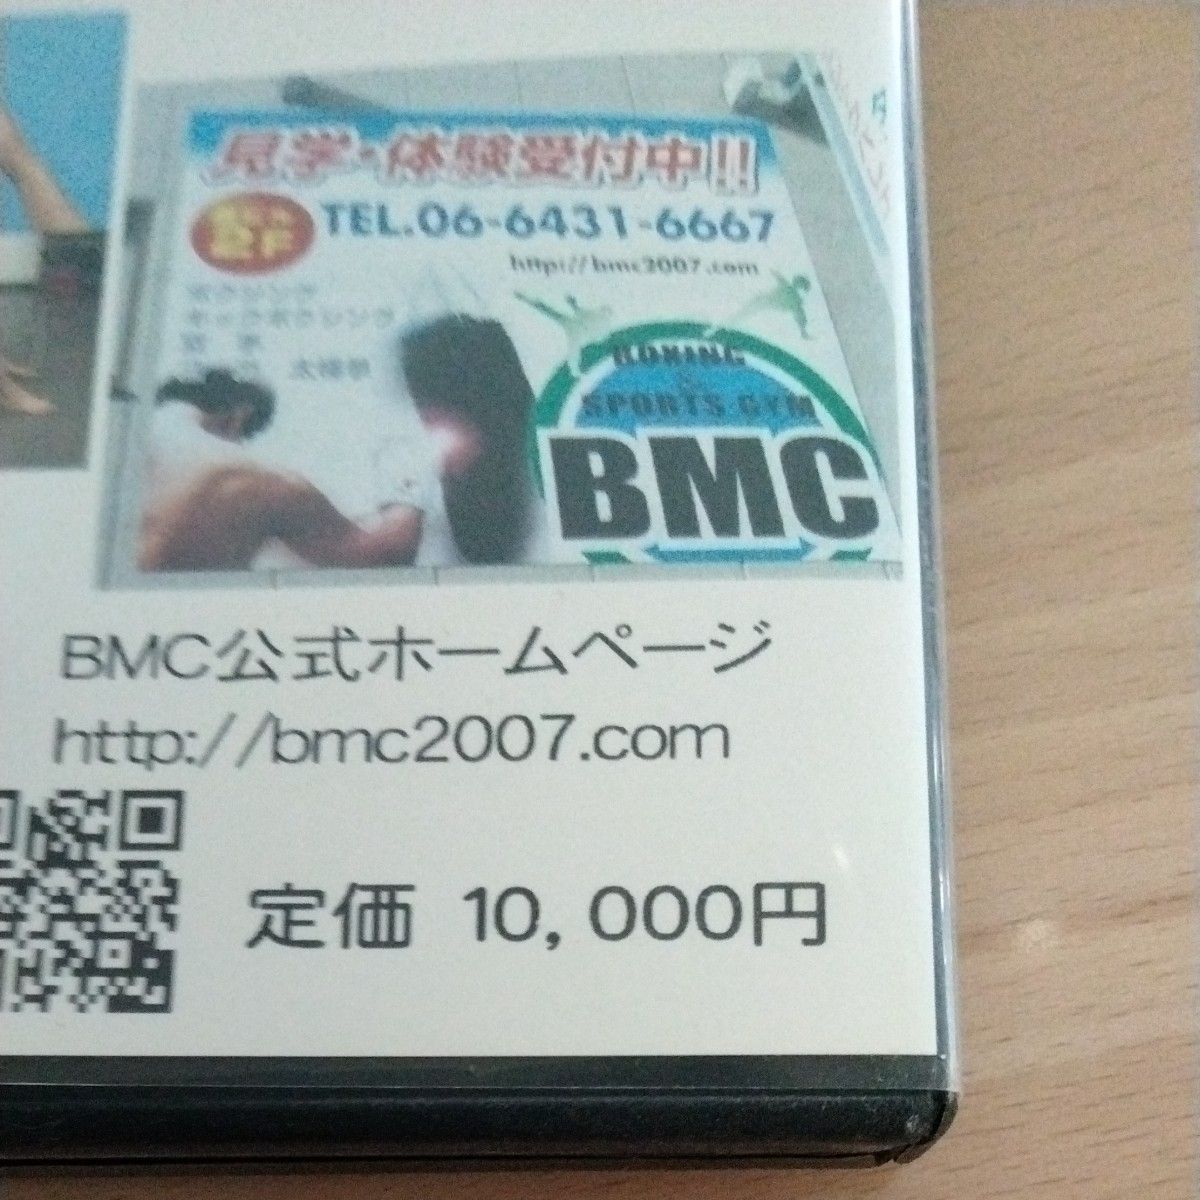 BMC キックボクシング 入門編 DVD 世界一わかりやすい 吉沢陸　